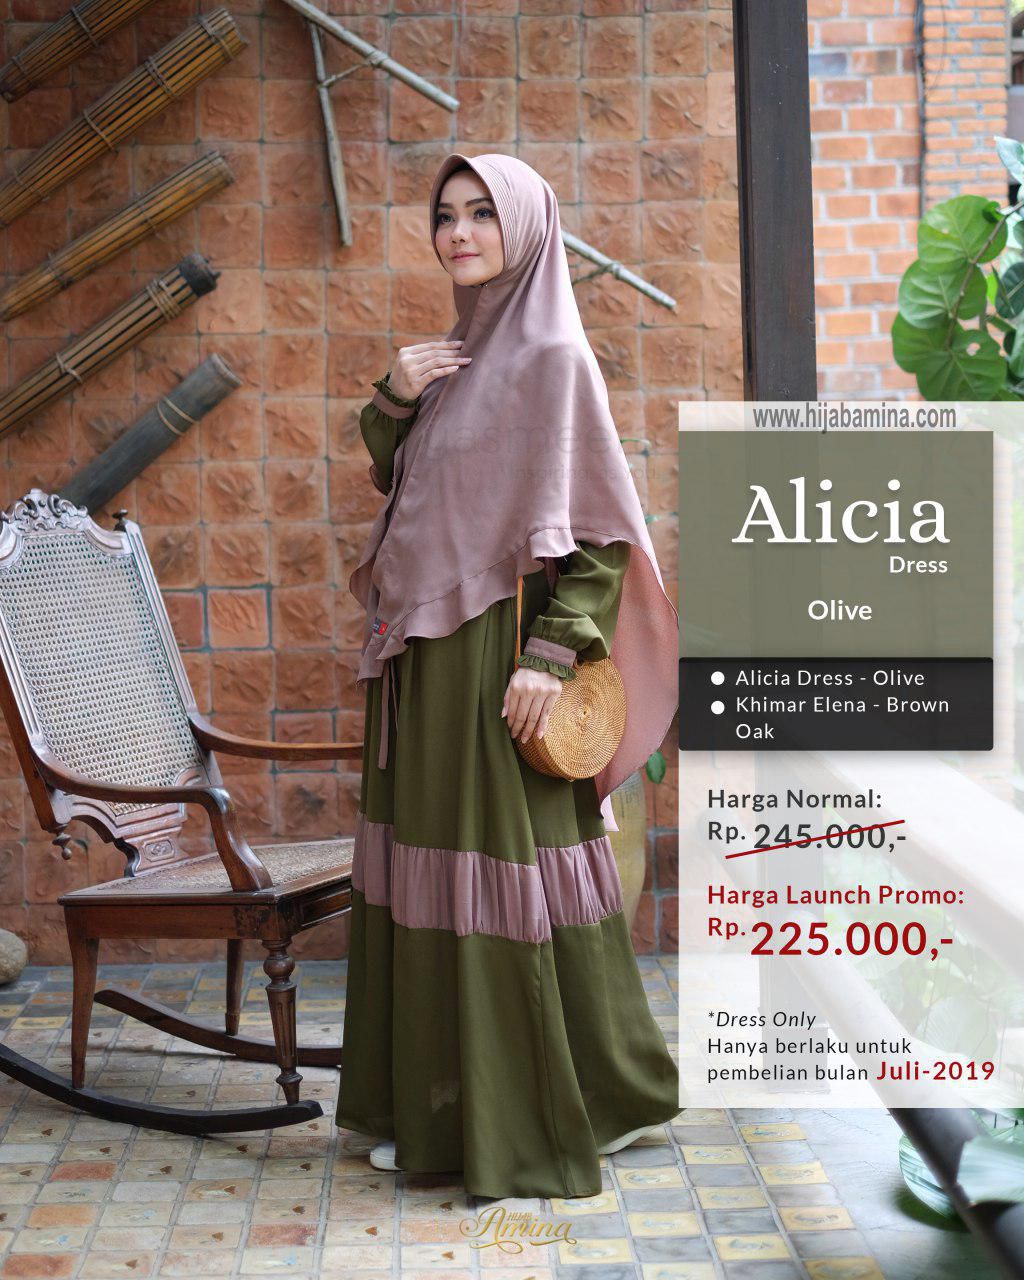 Alicia Dress – Olive